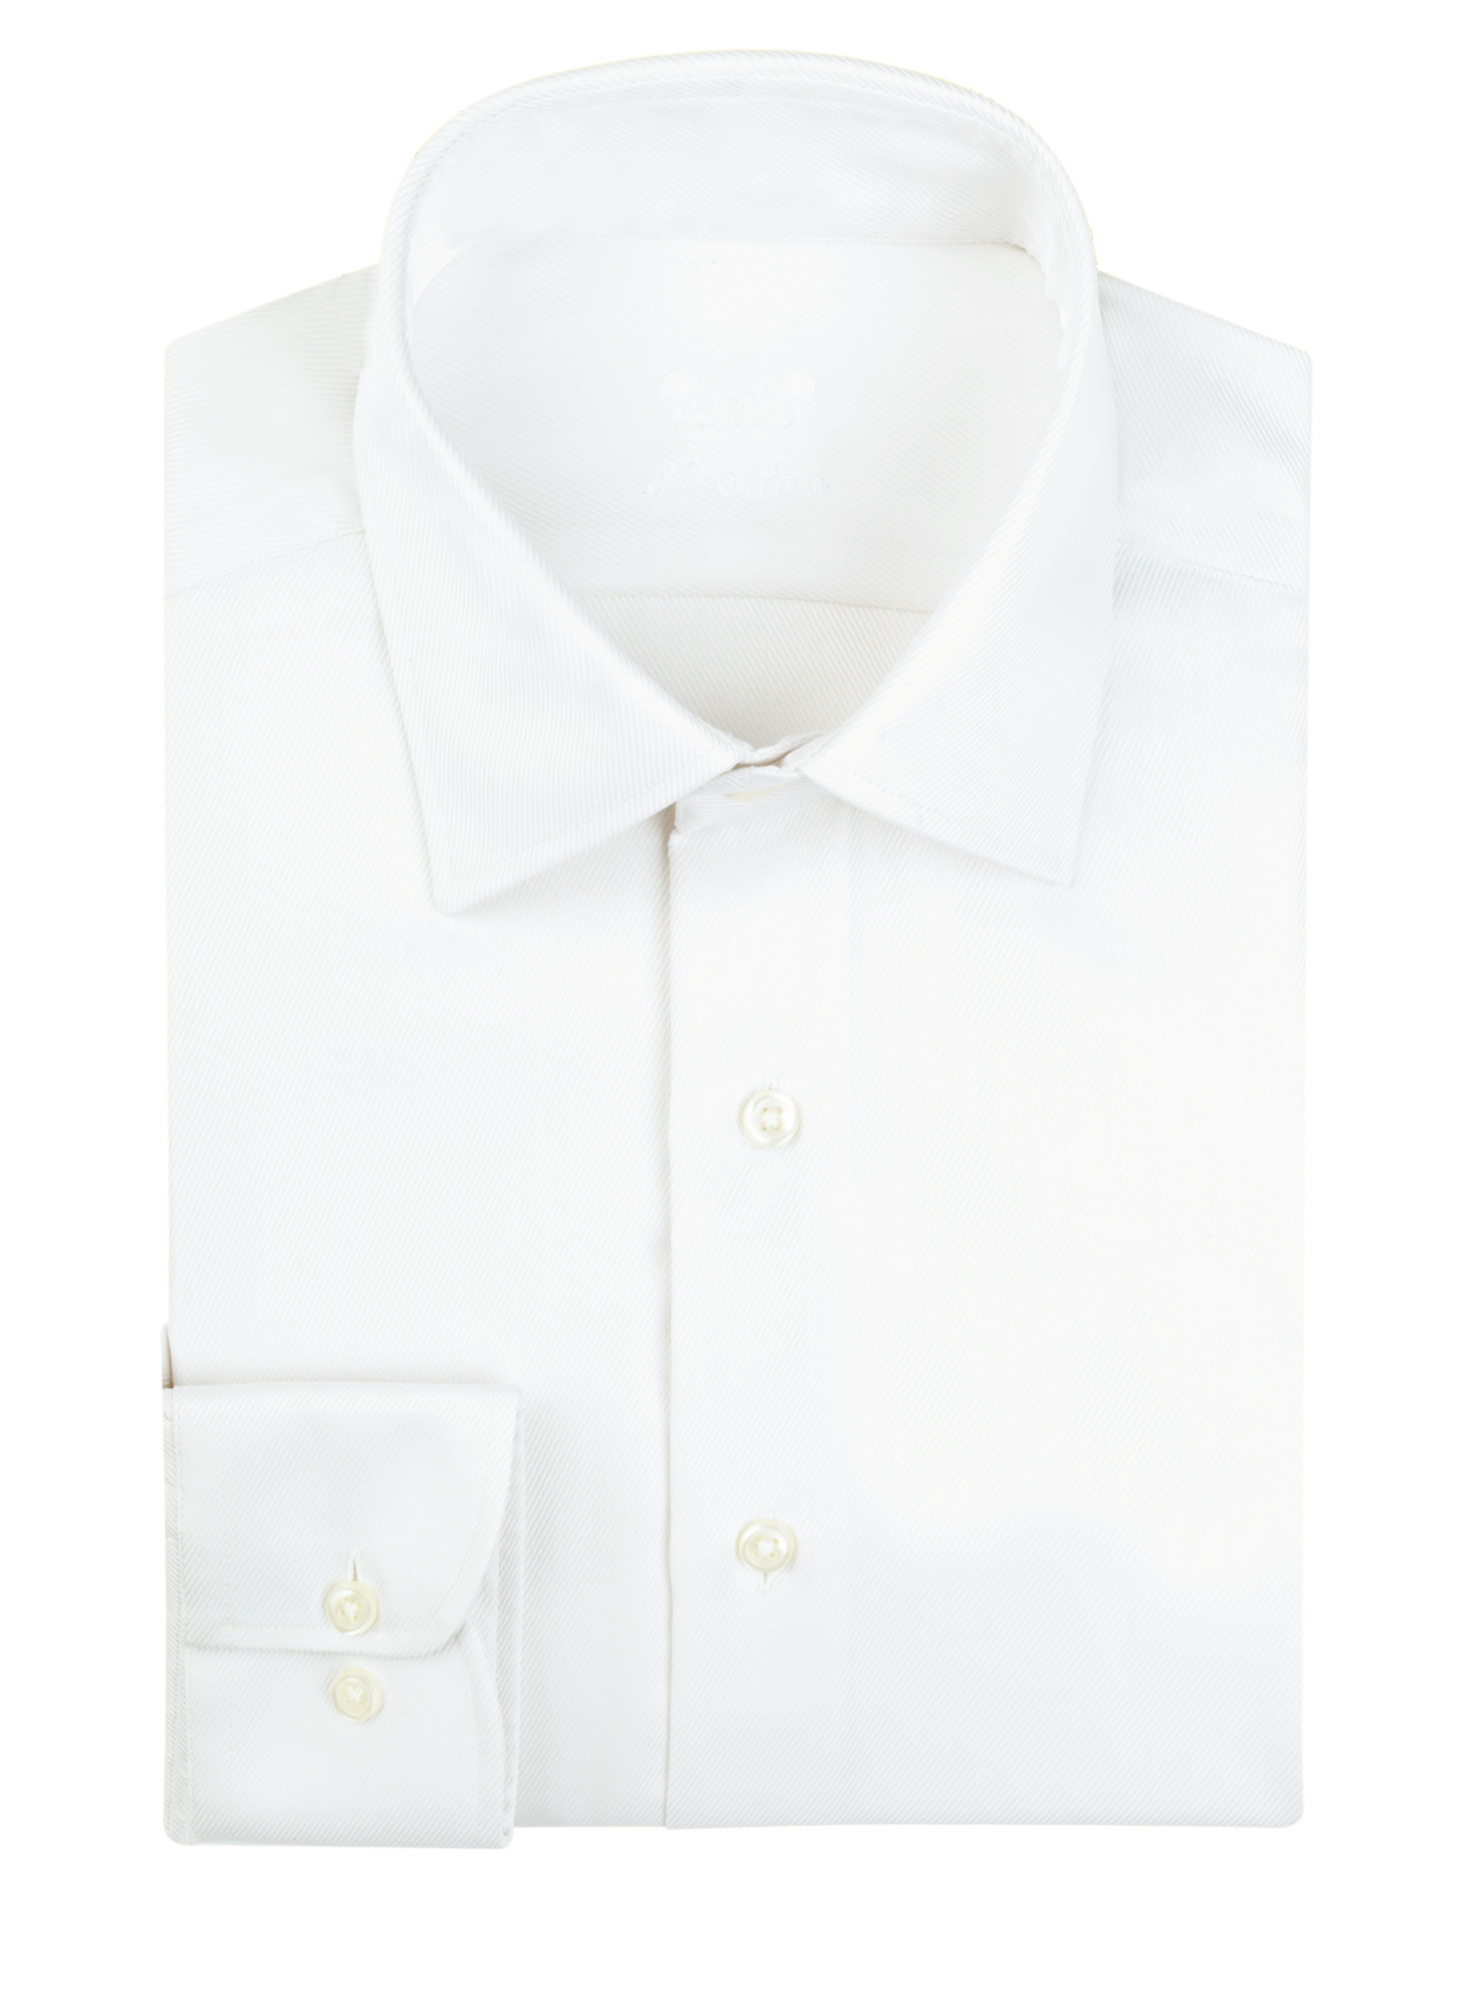 PARMA - Sarga marfil camisa de hombre de la boda - ROCO 2 